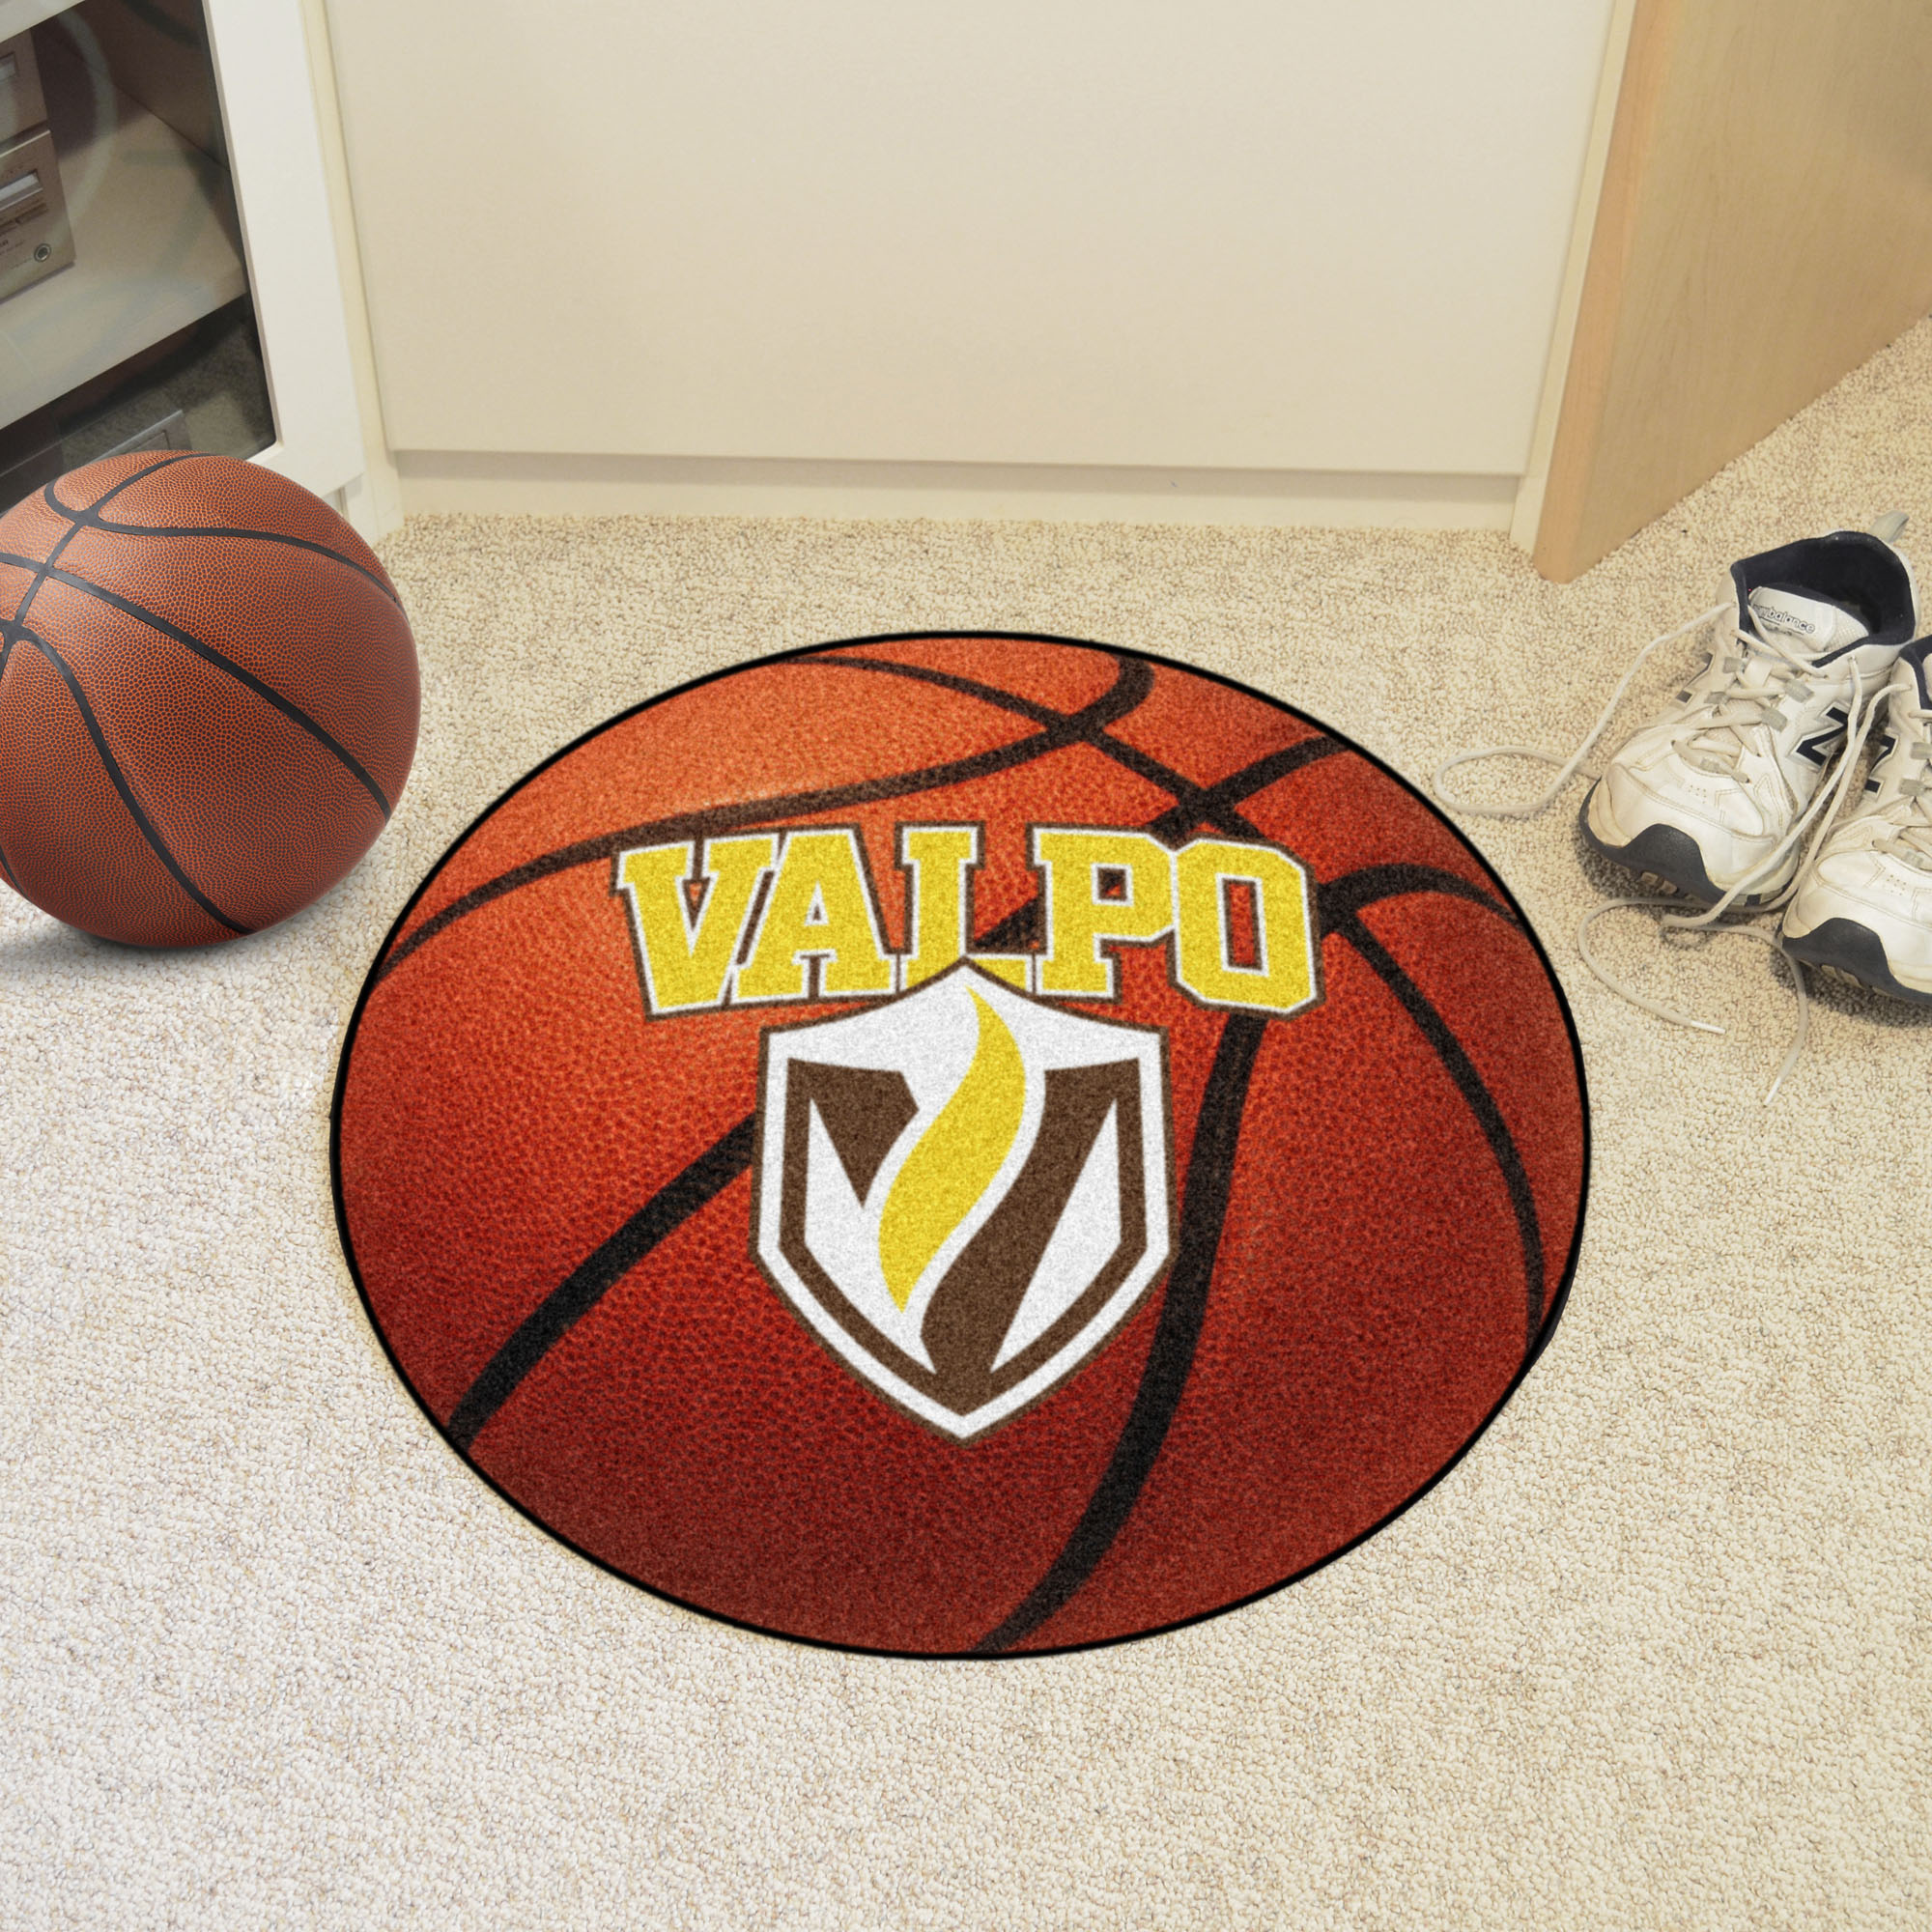 University of Washington Ball Shaped Area rugs (Ball Shaped Area Rugs: Soccer Ball)